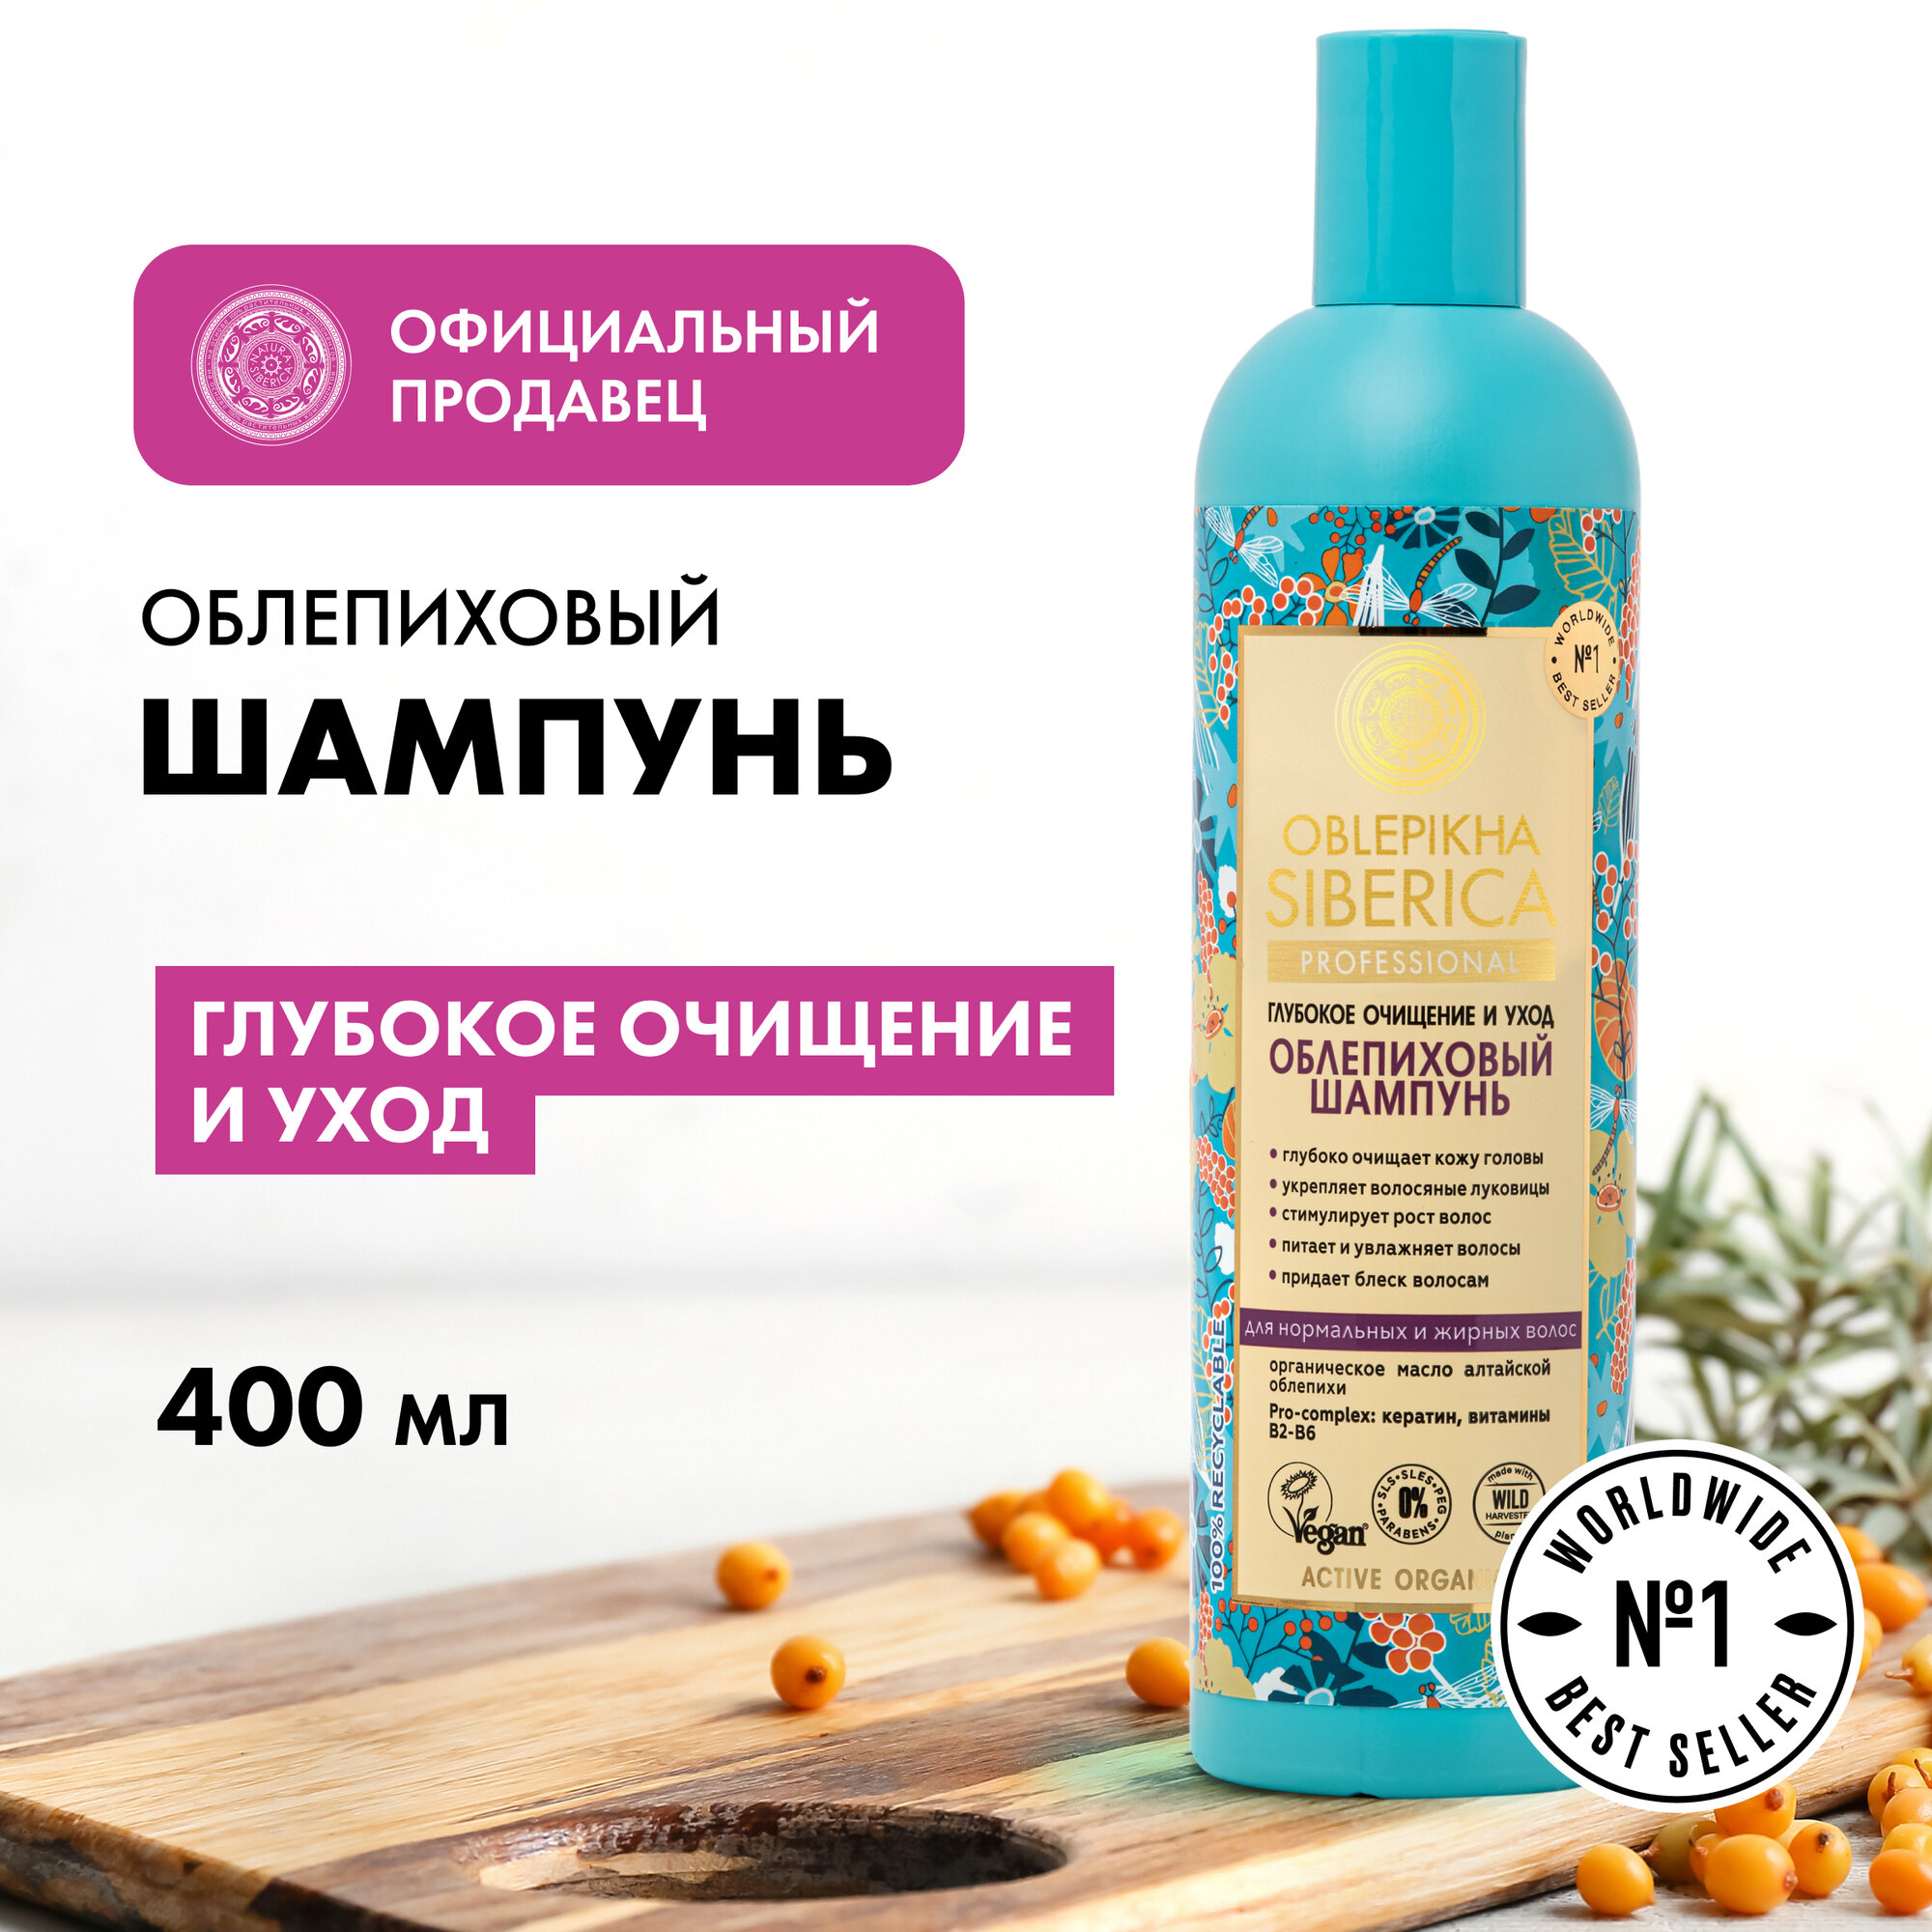 Облепиховый шампунь Natura Siberica Oblepikha Siberica для нормальных и жирных волос 400 мл